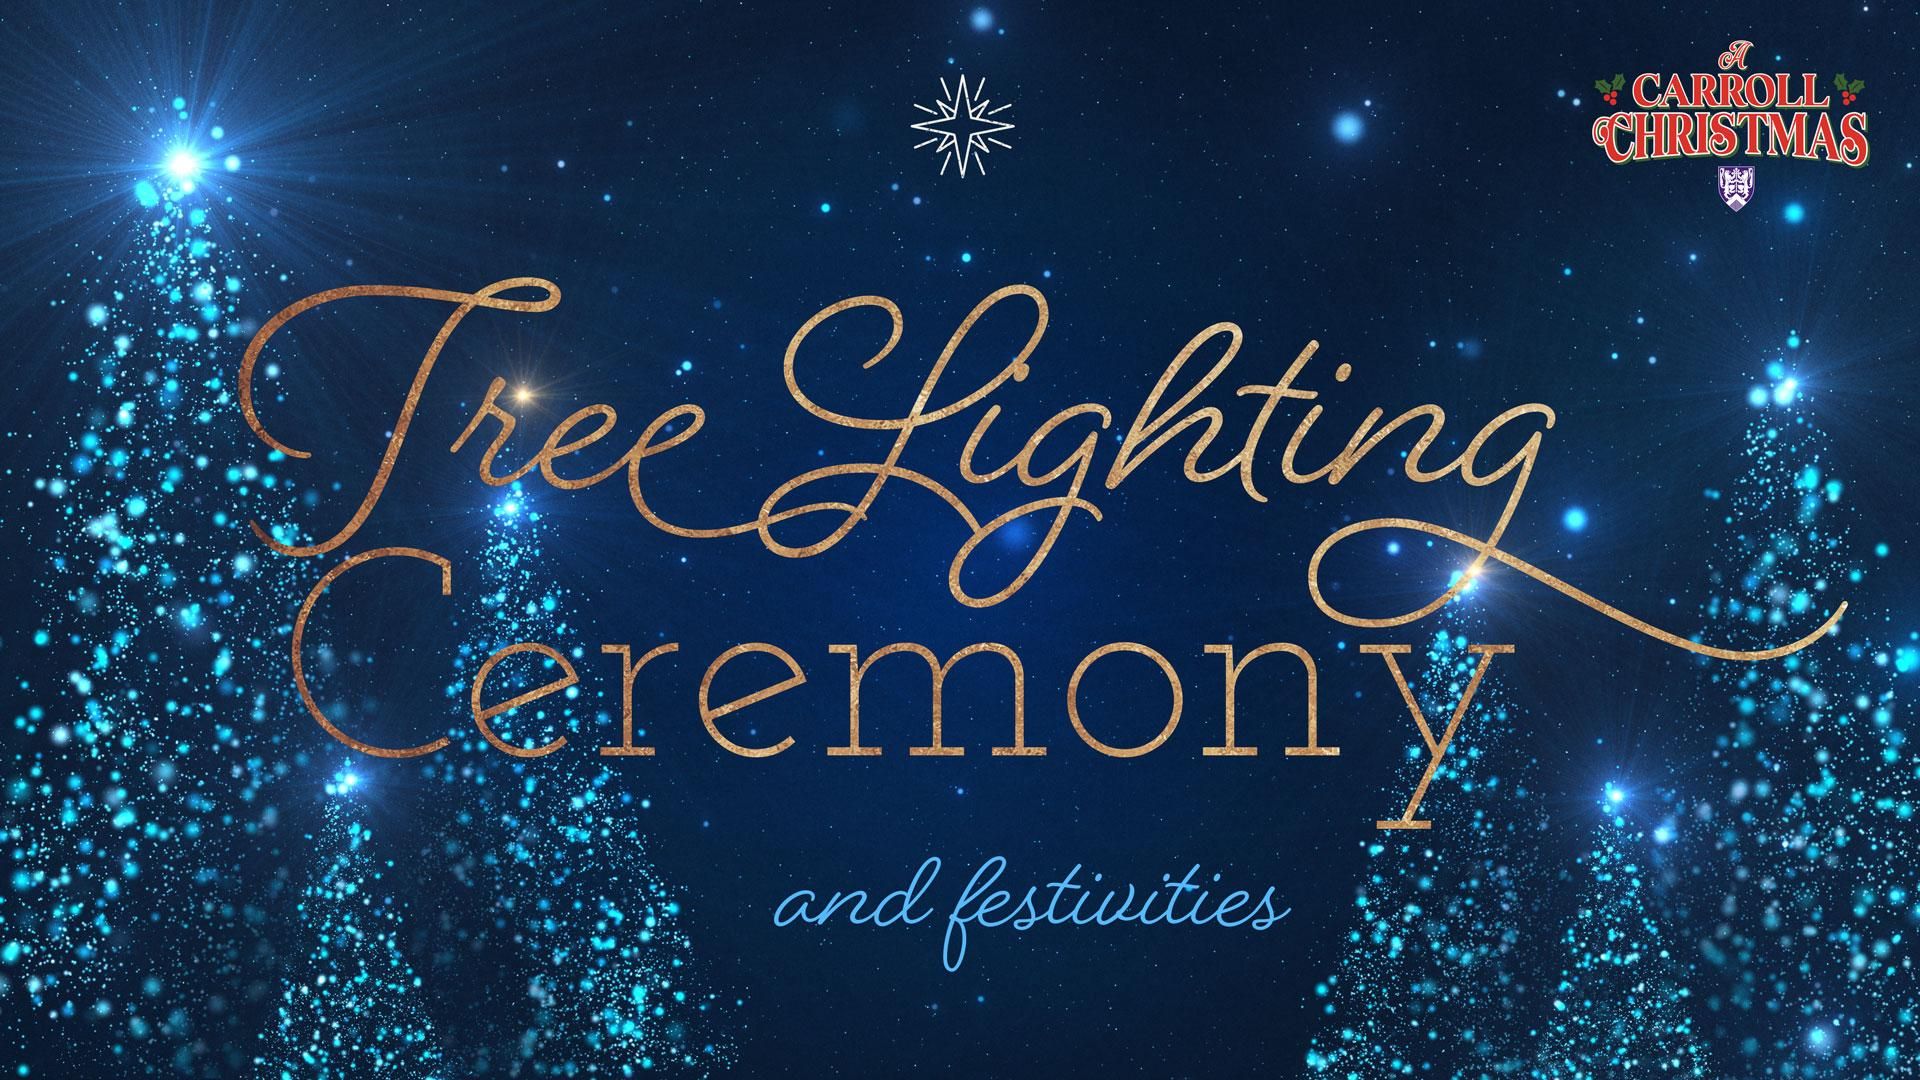 Tree Lighting Ceremony and Festivities